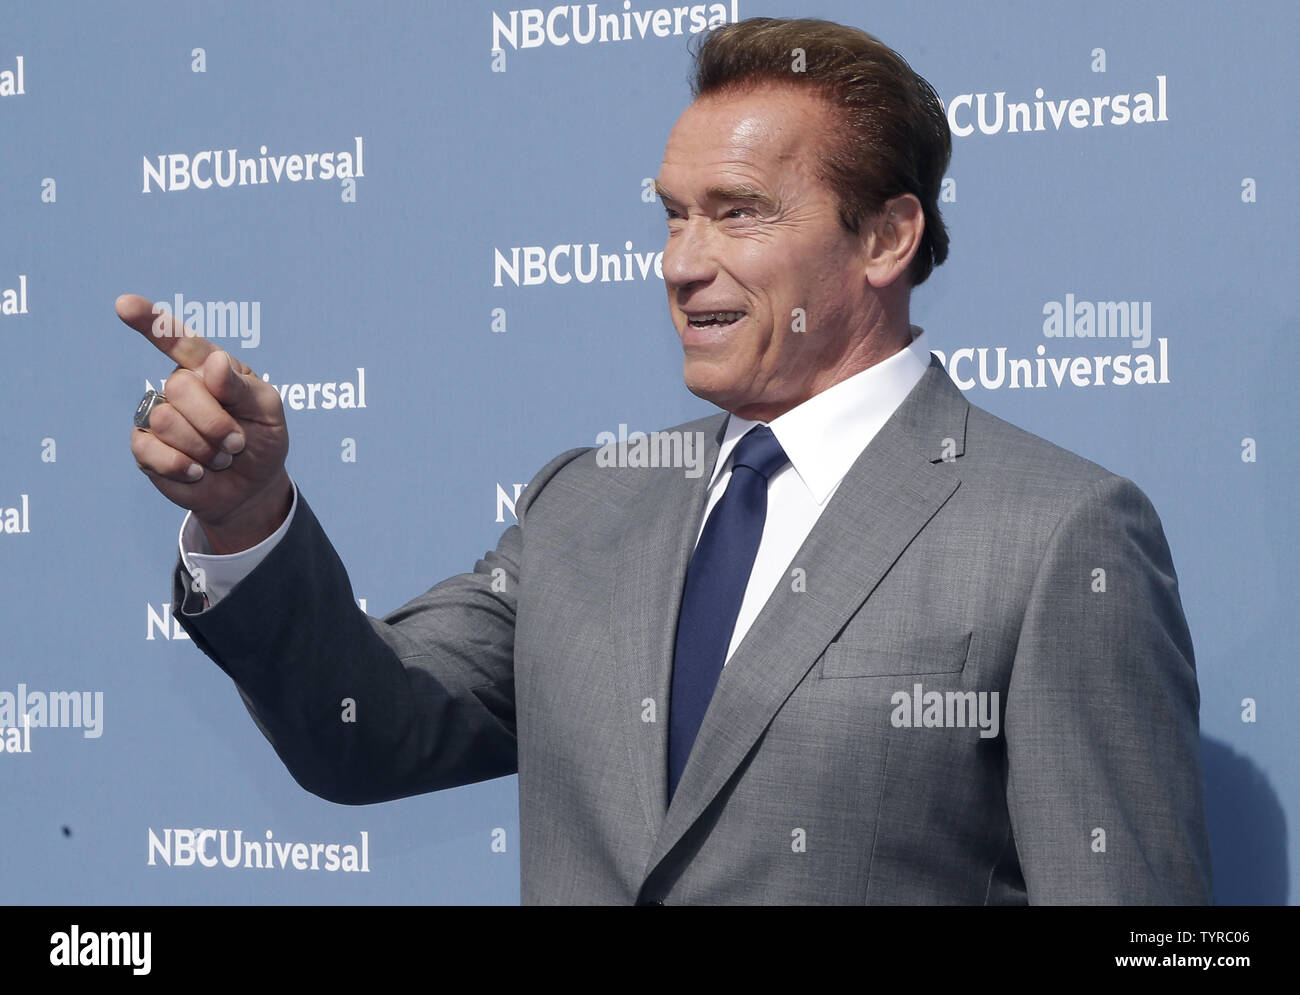 Arnold Schwarzenegger arriva sul tappeto la 2016 NBCUNIVERSAL in anticipo al Radio City Music Hall il 16 maggio 2016 in New York City. Foto di Giovanni Angelillo/UPI Foto Stock